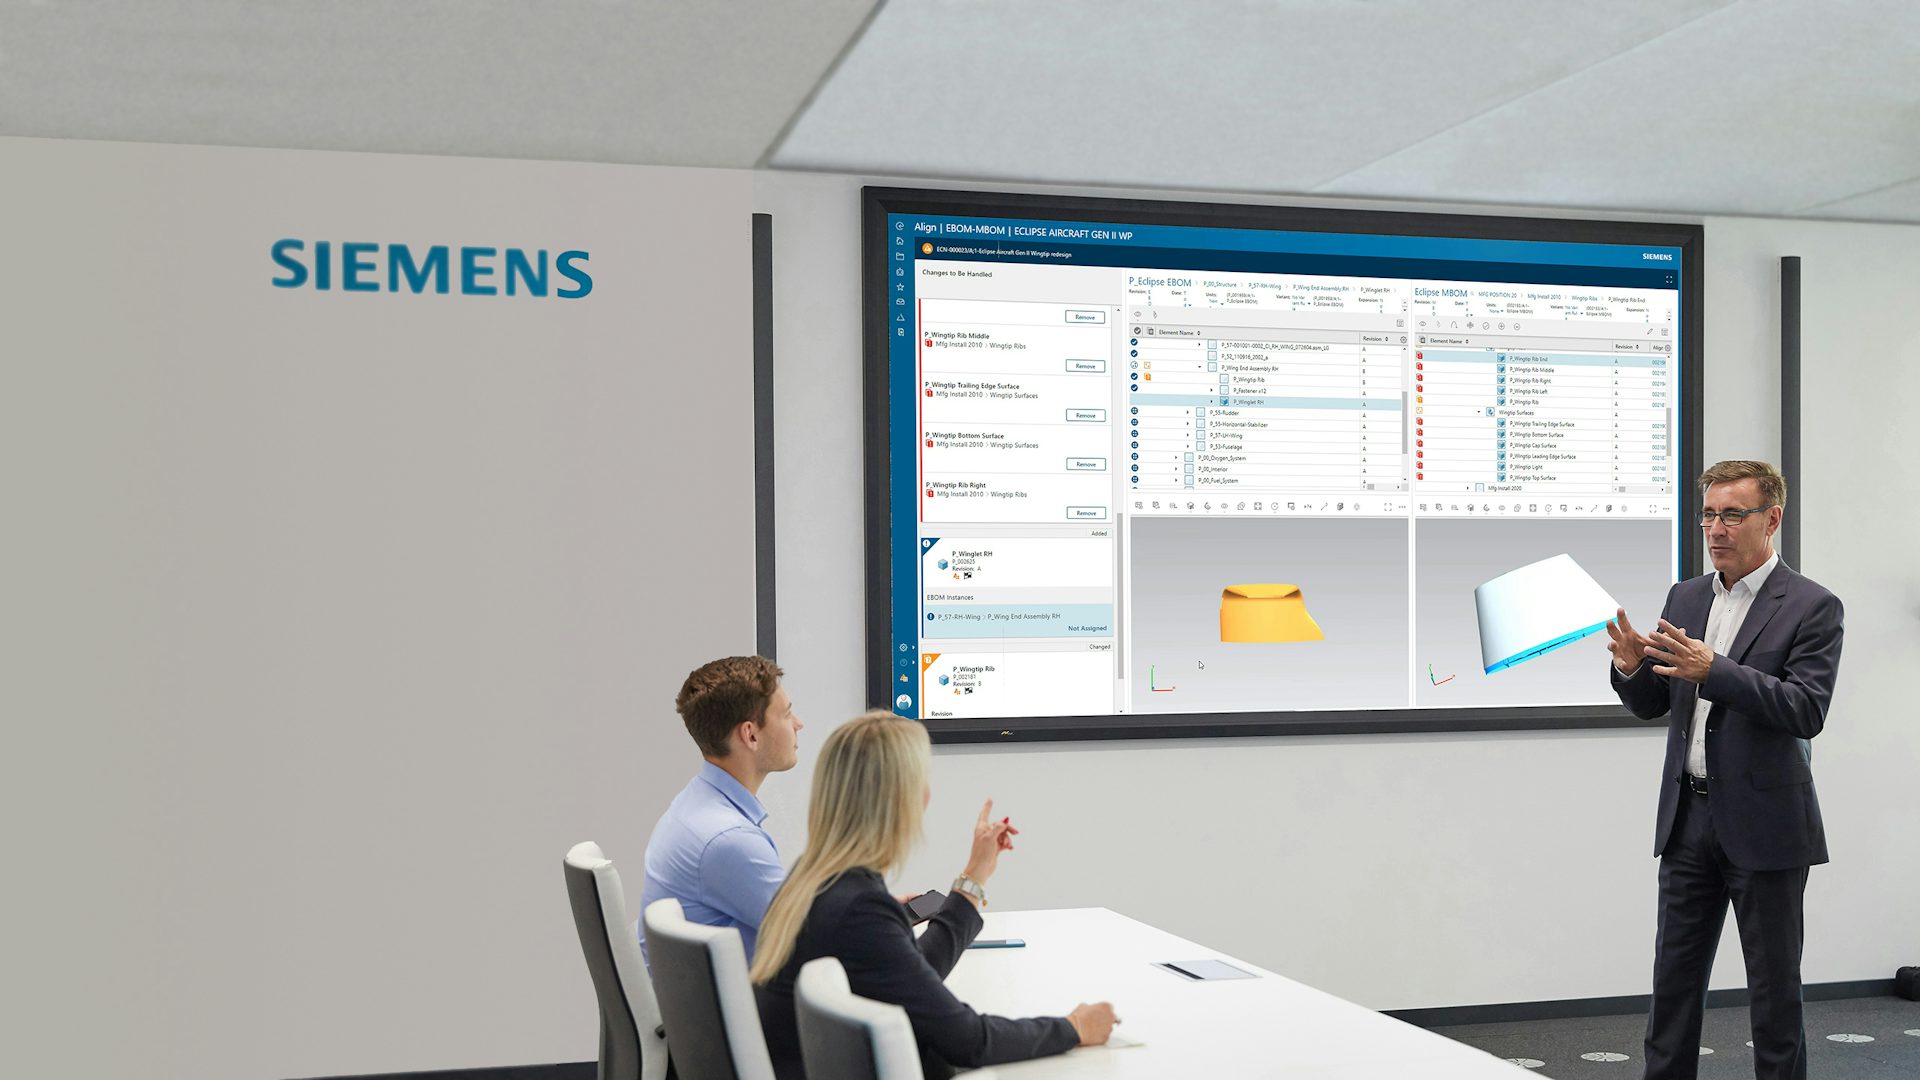 Tři plánovači výroby procházejí plán procesů pomocí softwaru Siemens na velké obrazovce v zasedací místnosti.